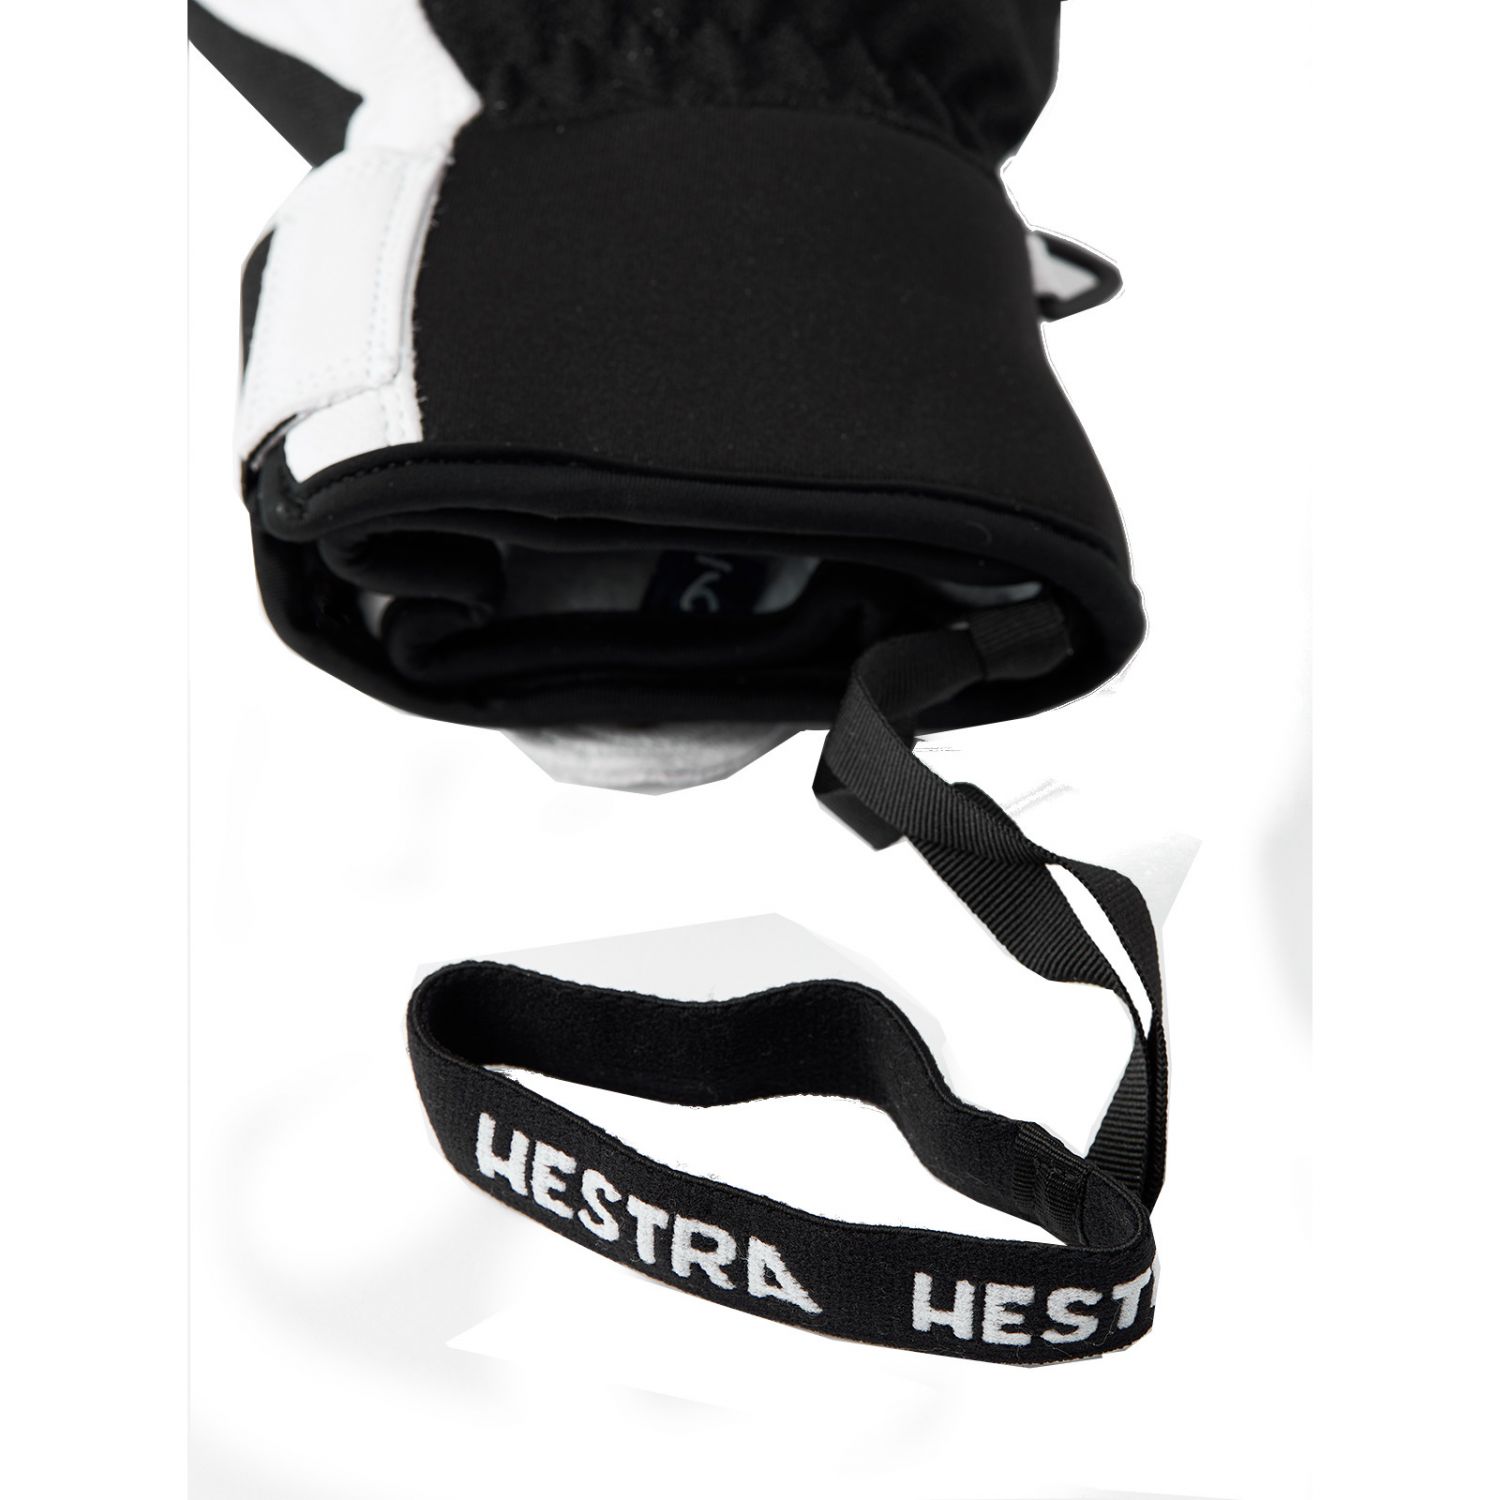 Hestra Army Leather Patrol ski mitten, black